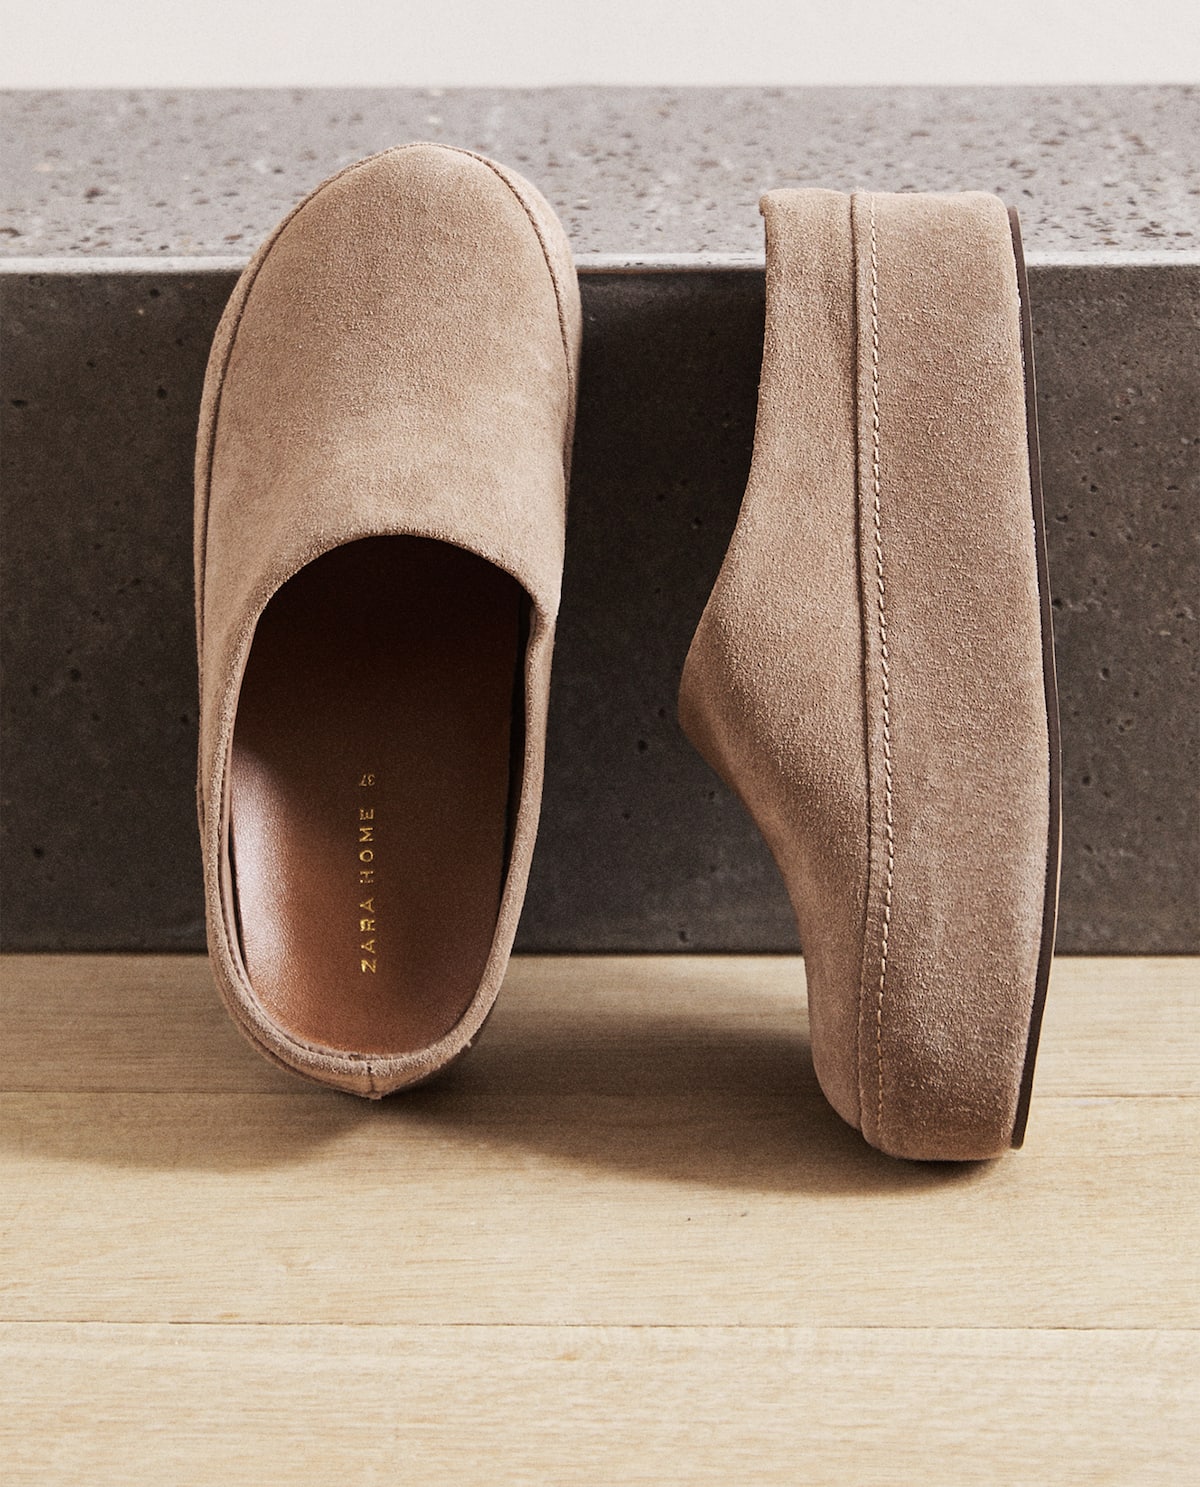 Zara Home tiene las zapatillas de ir por casa de piel low cost inspiradas en UGG